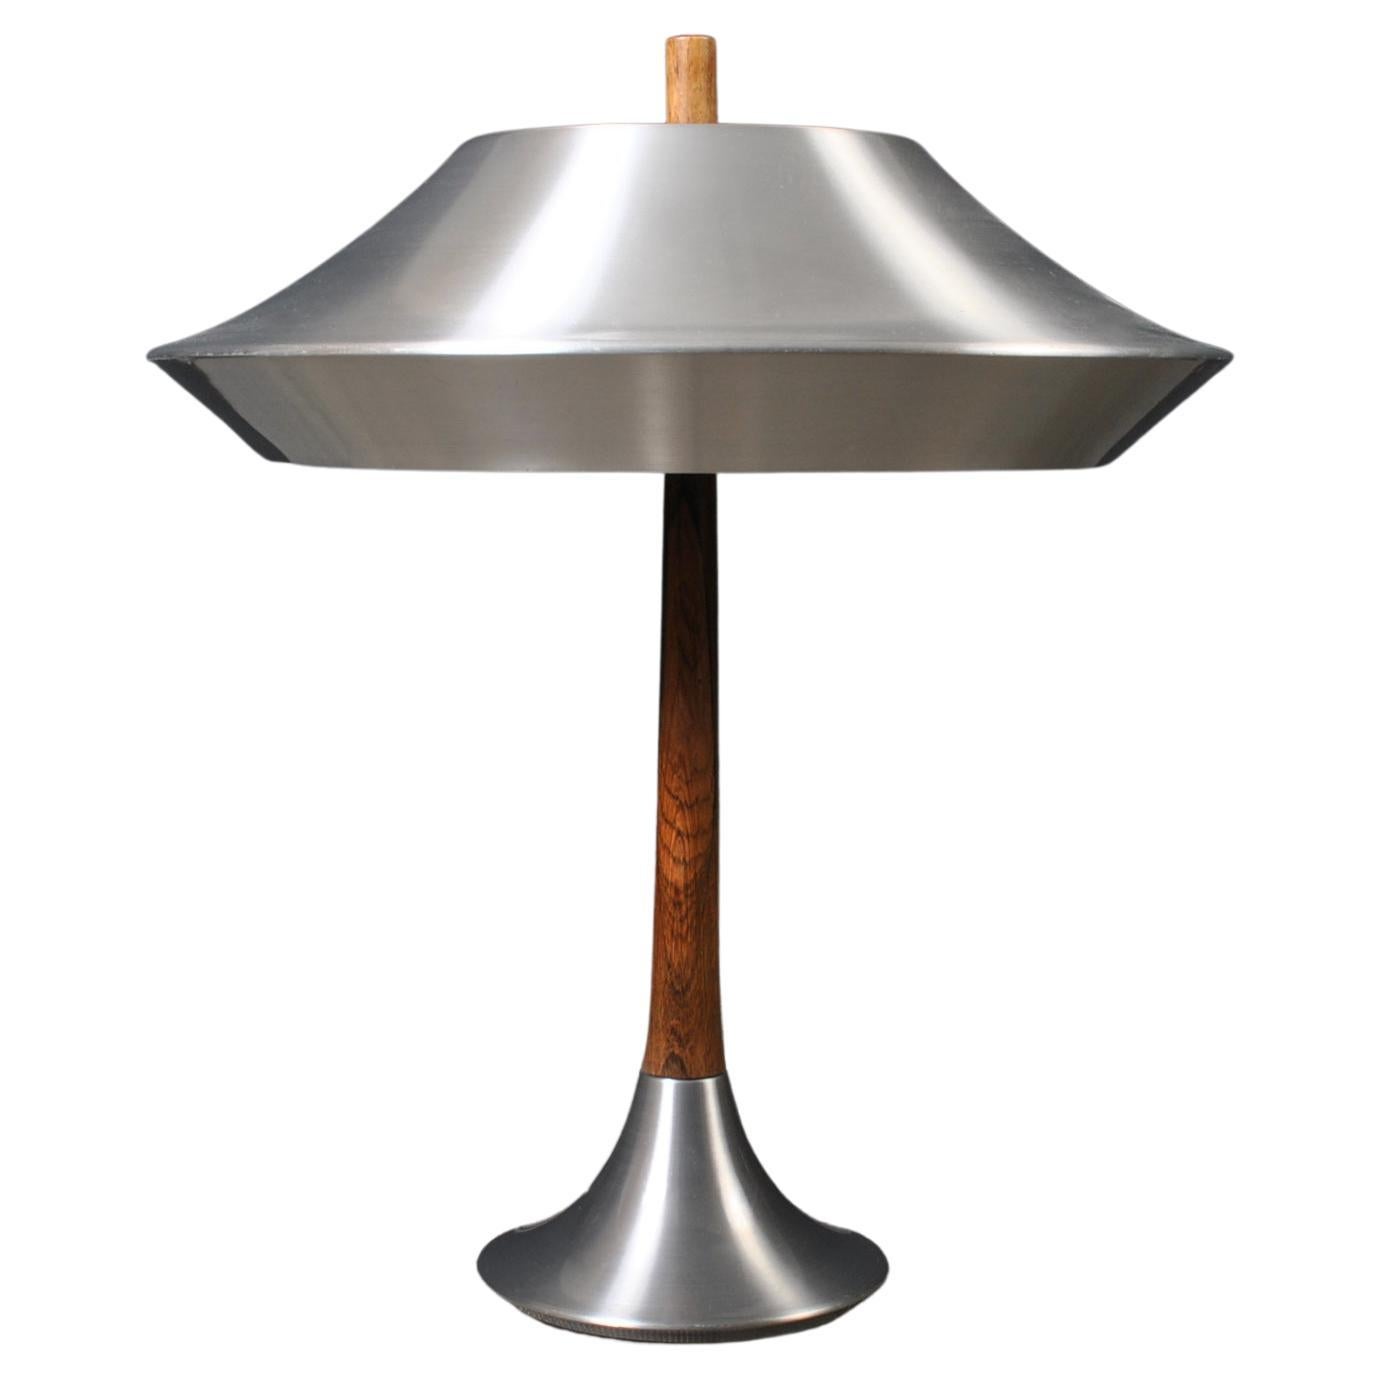 Danish Midcentury Modern Lamp